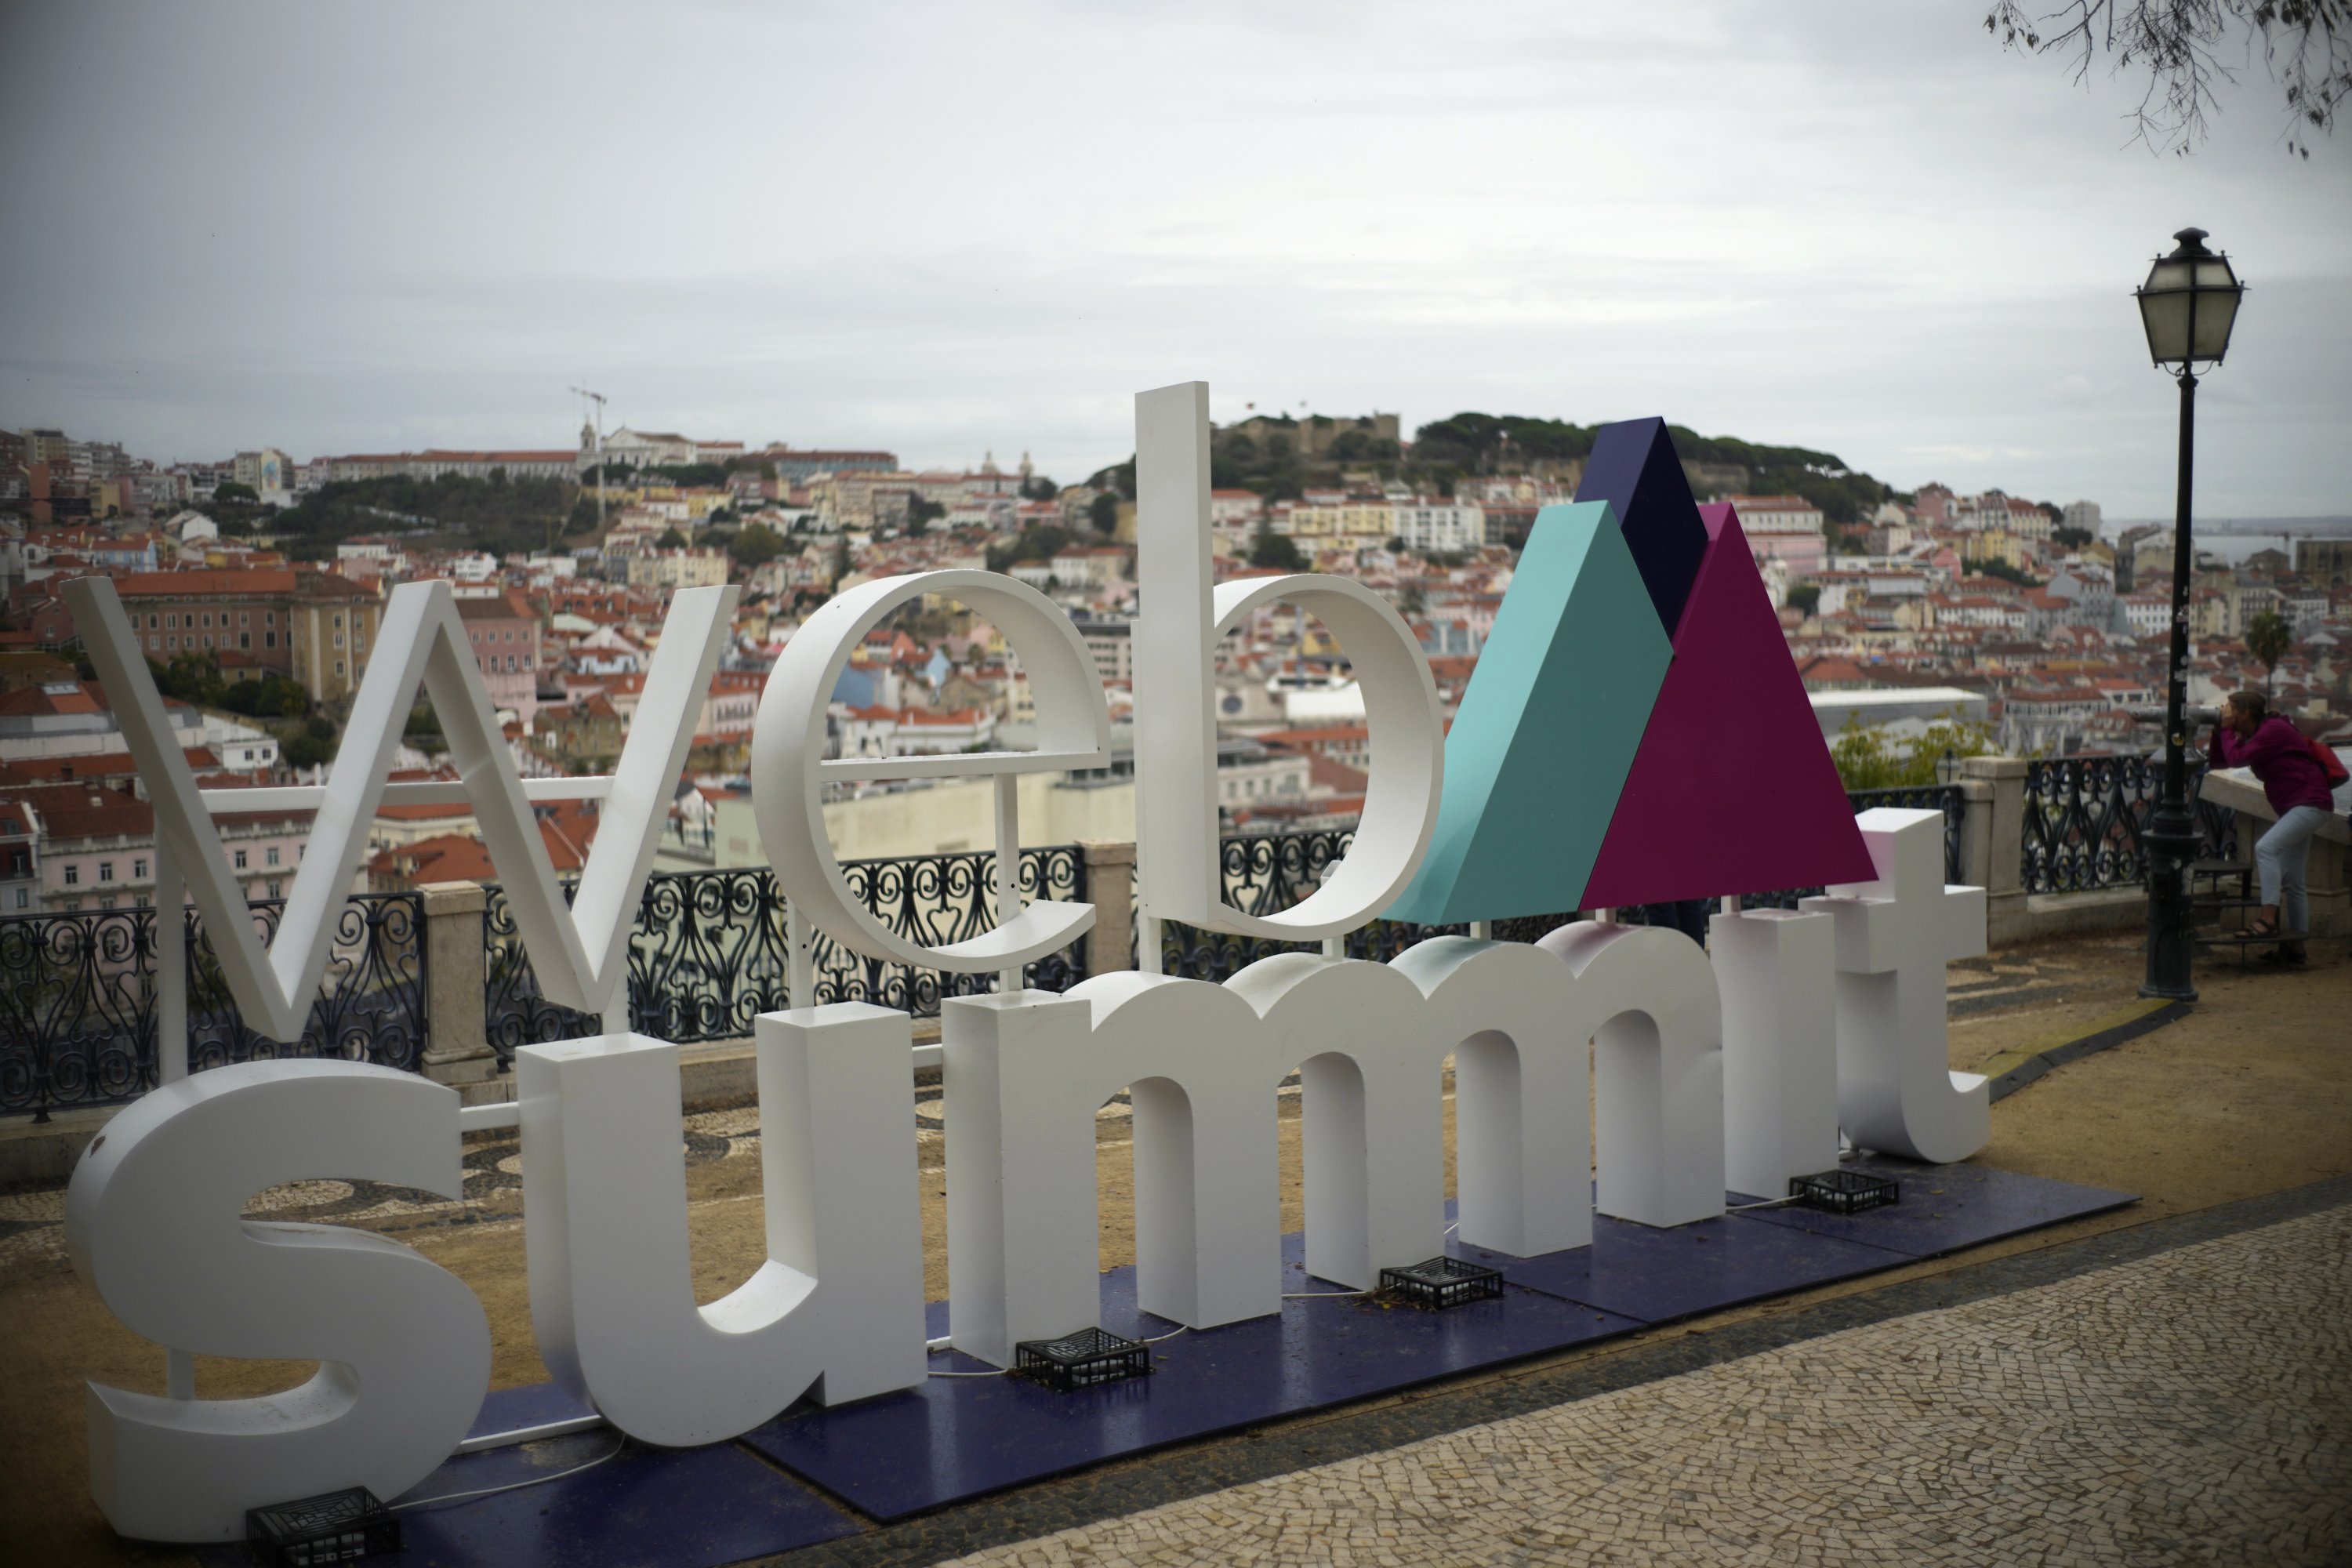 Logo konferensi teknologi Web Summit ditampilkan di sudut pandang yang menghadap ke pusat kota Lisbon, Portugal, 29 Oktober 2021. (AP Photo)